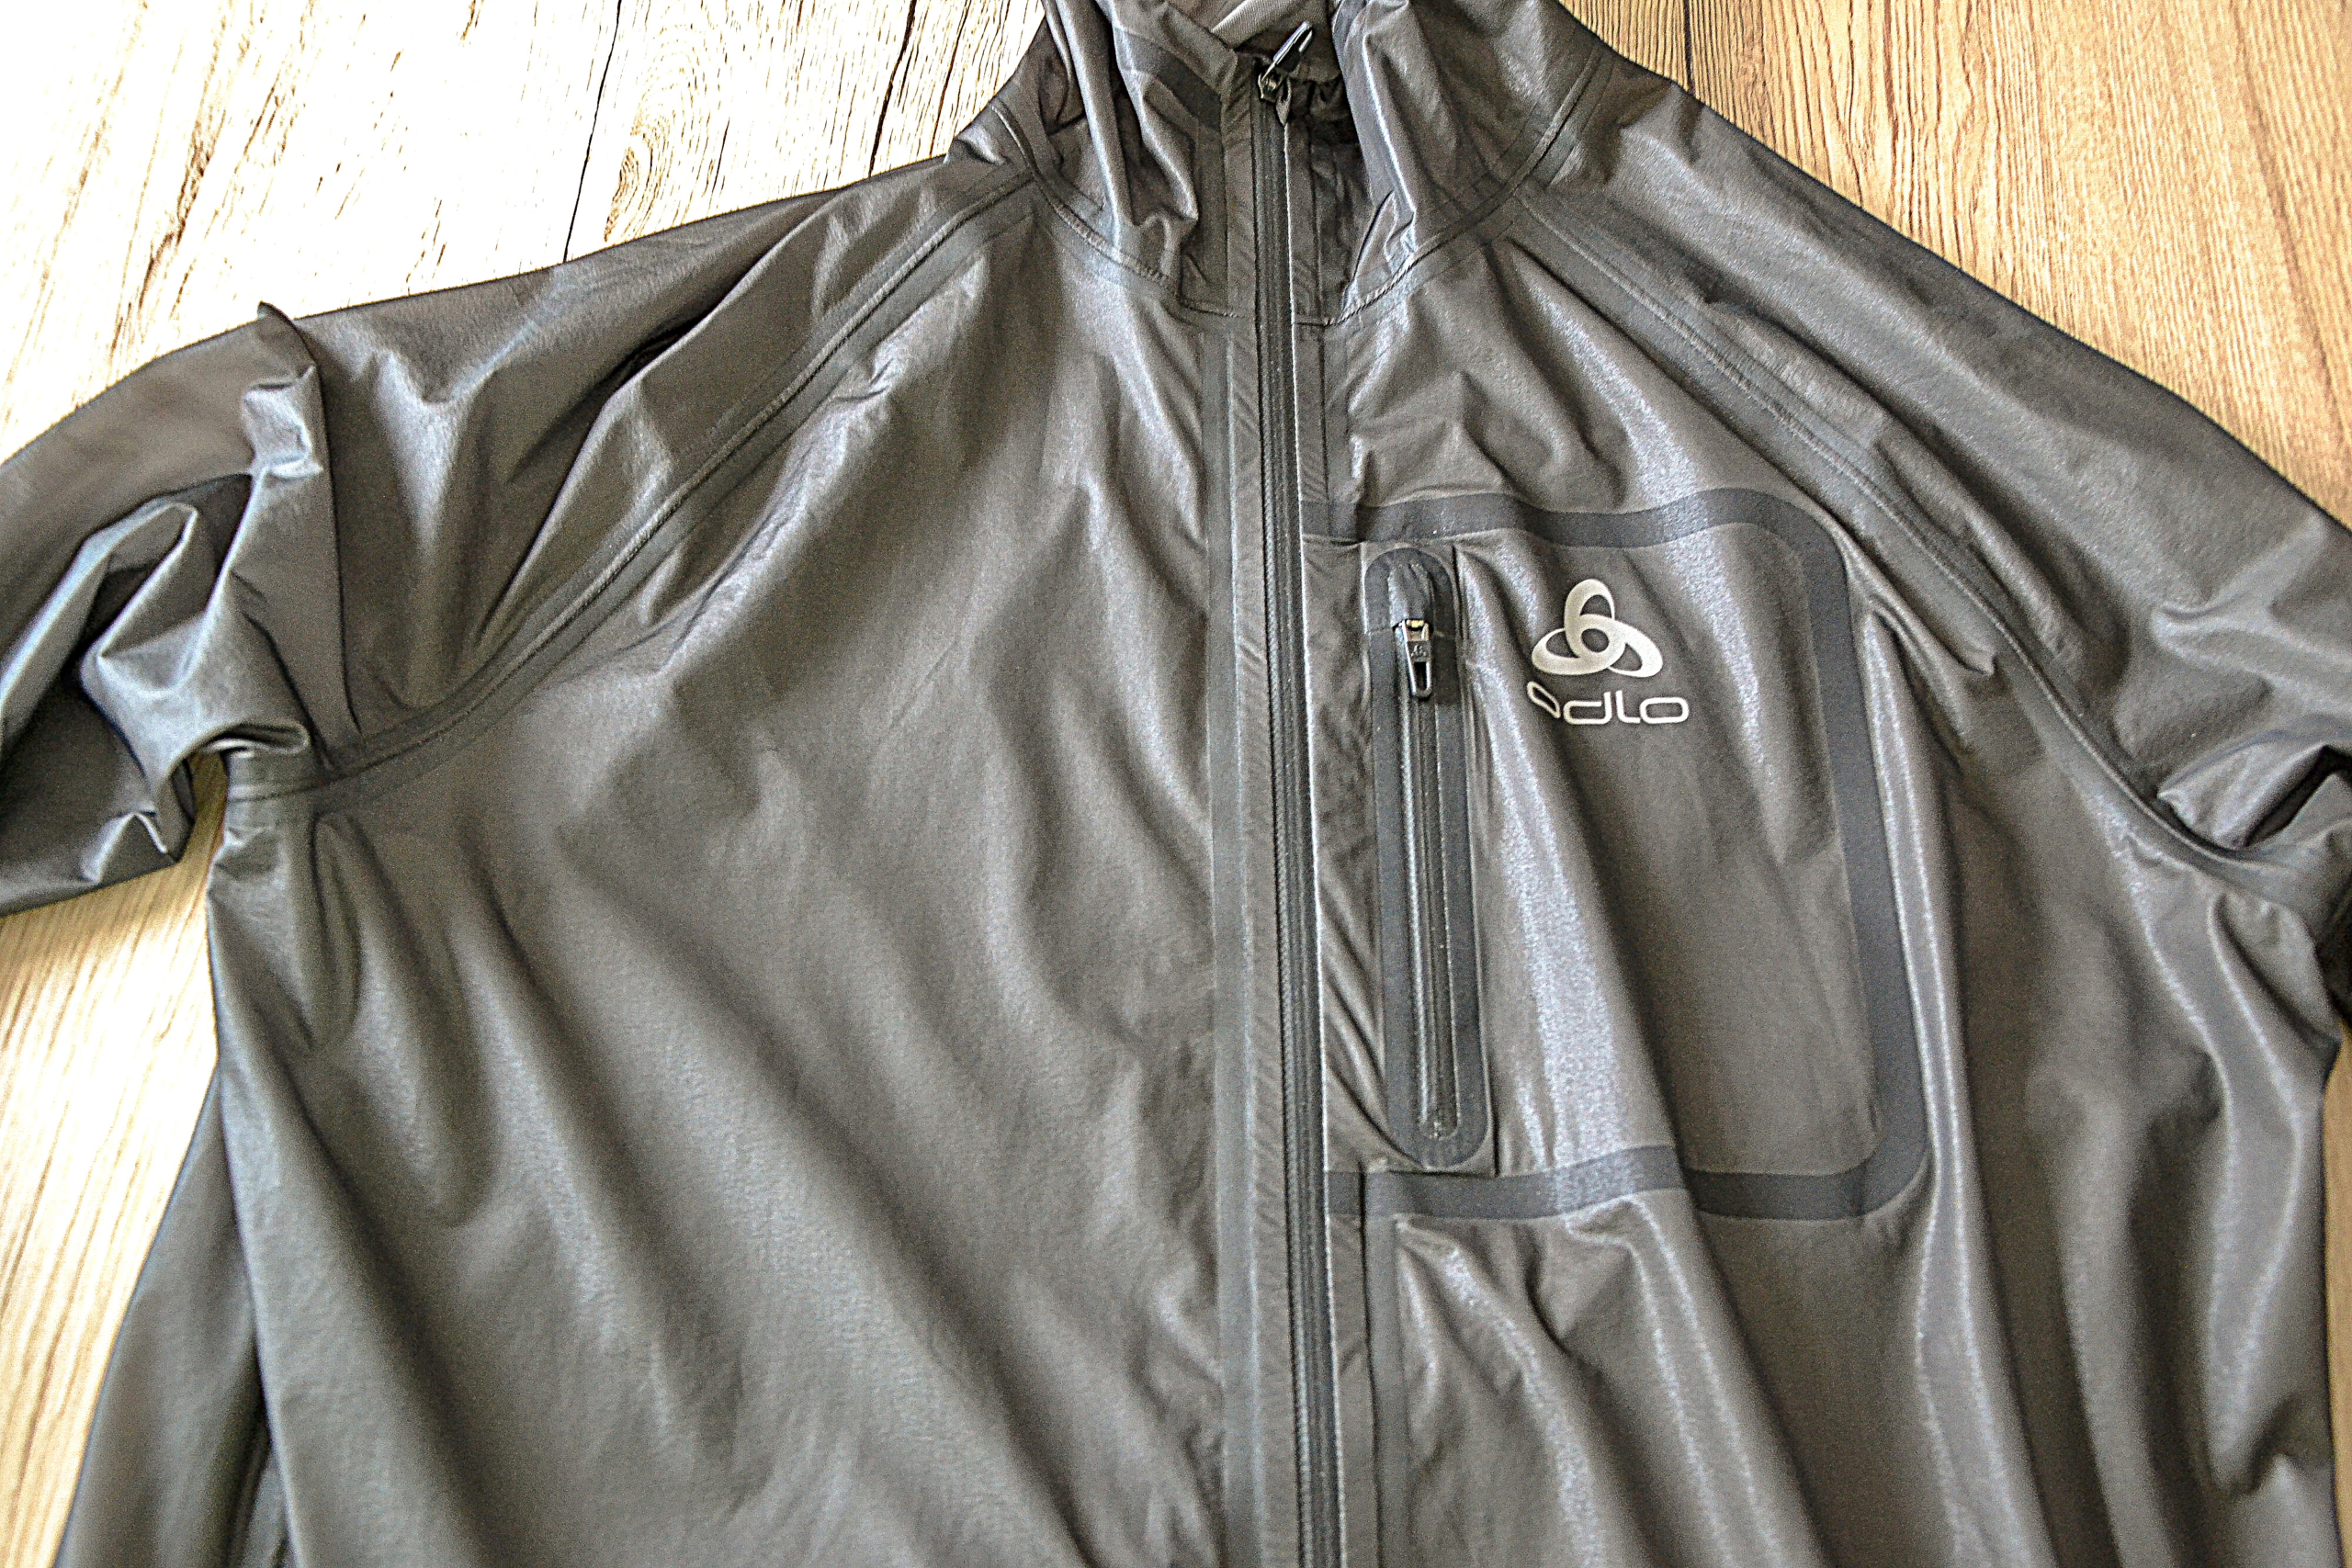 Veste imperméable pour le sport trail running ODLO jacket zeroweight  waterproof pour FEMME